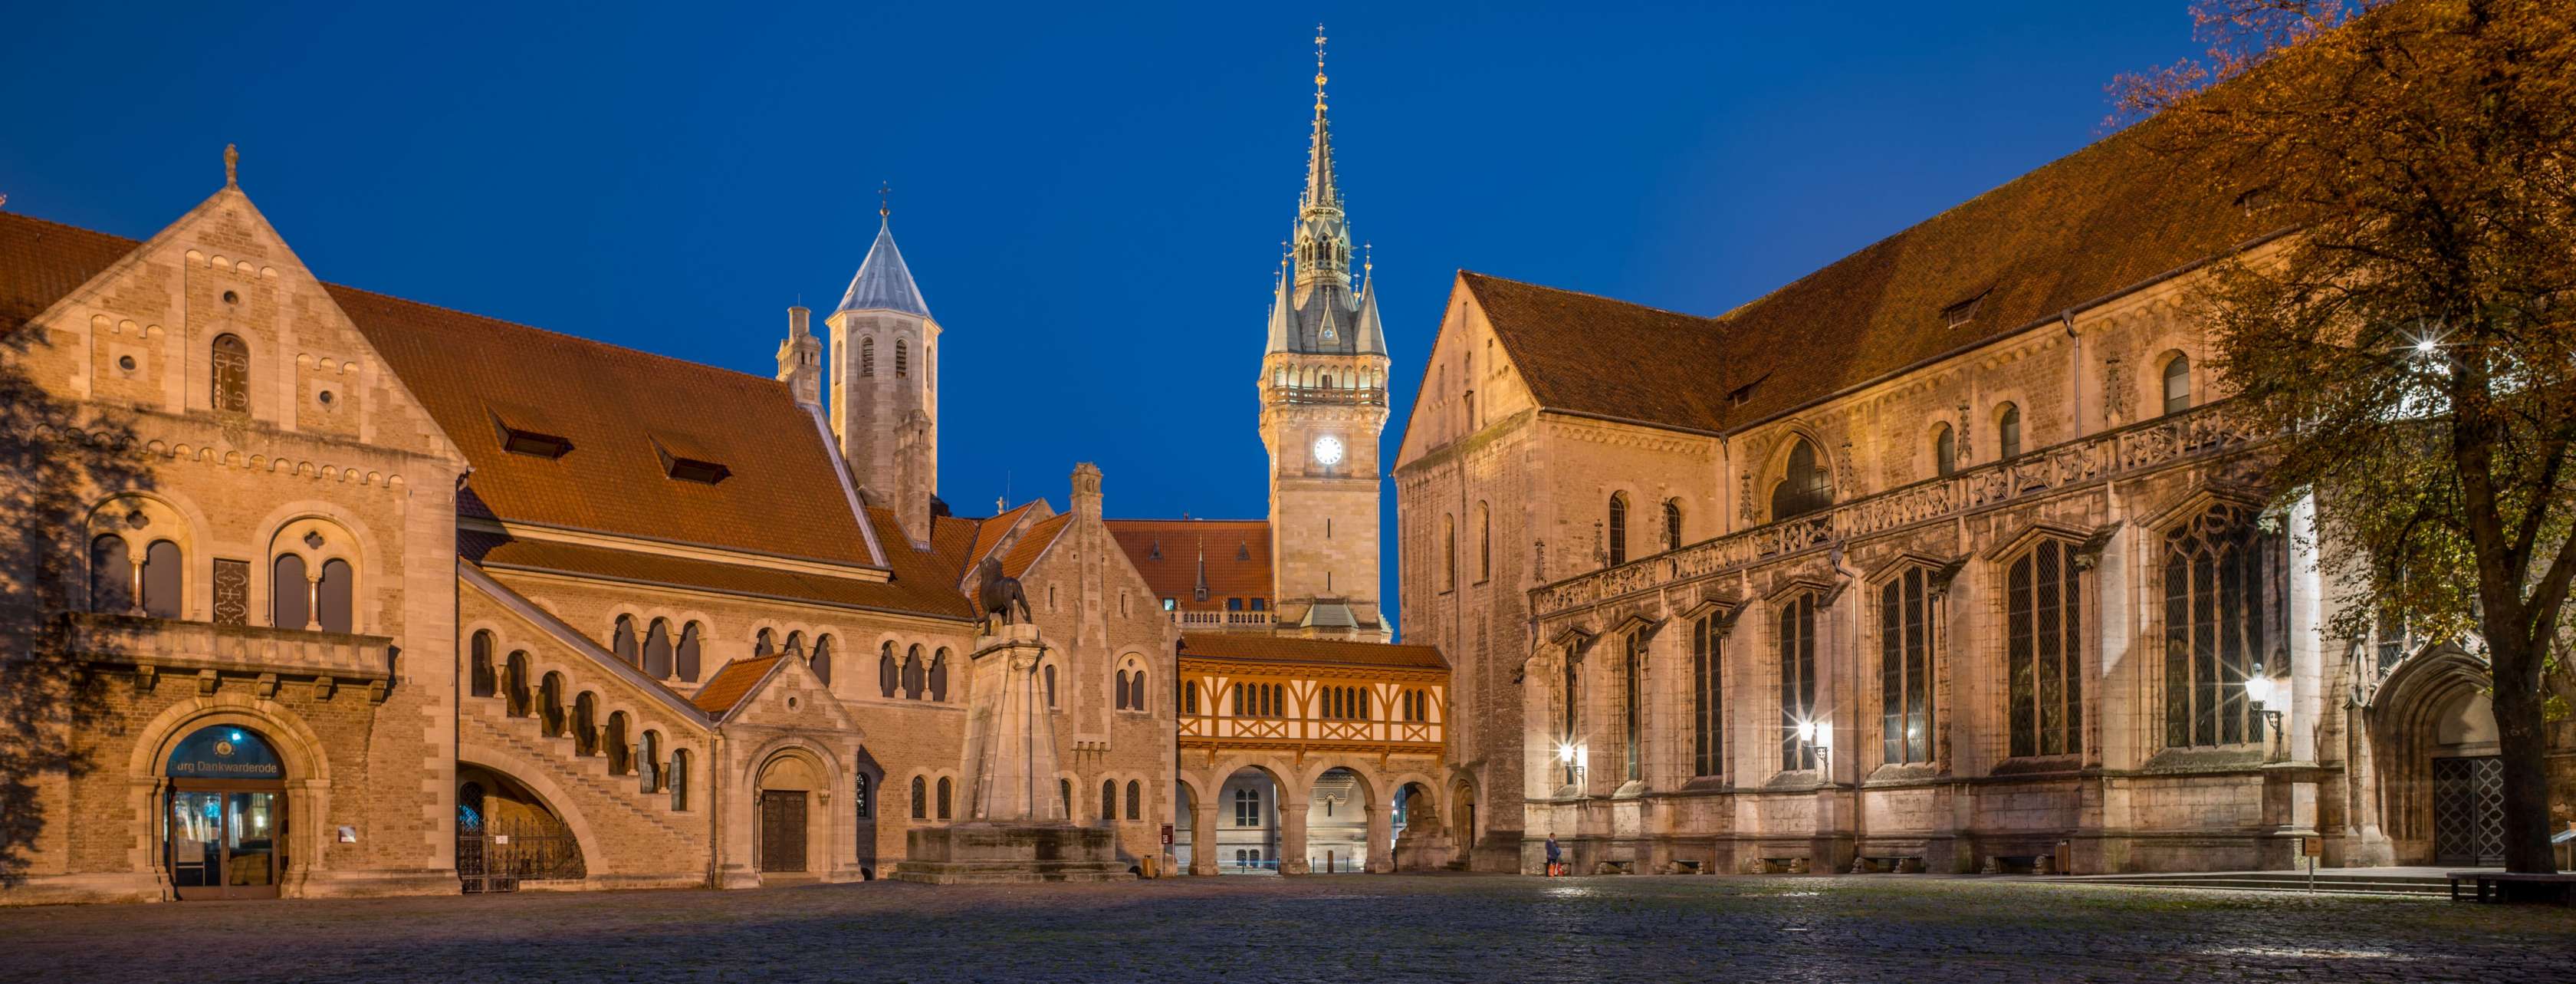 Blick auf den mittelalterlichen Burgplatz in Braunschweig